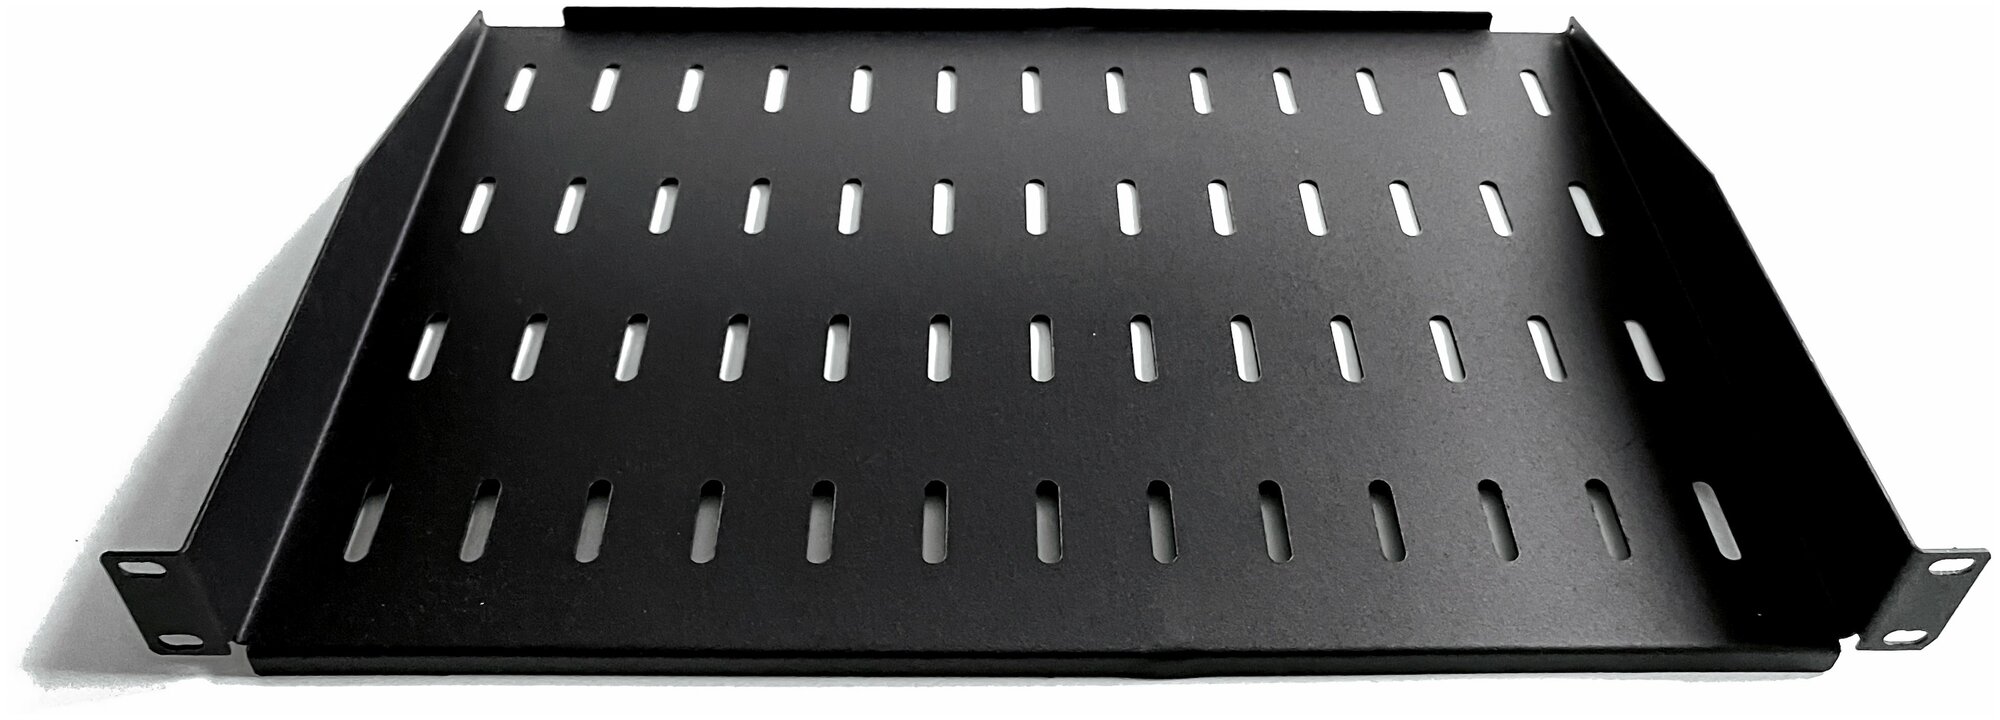 Полка 19 дюймов консольная универсальная 300мм черная: 19box-С-30/B